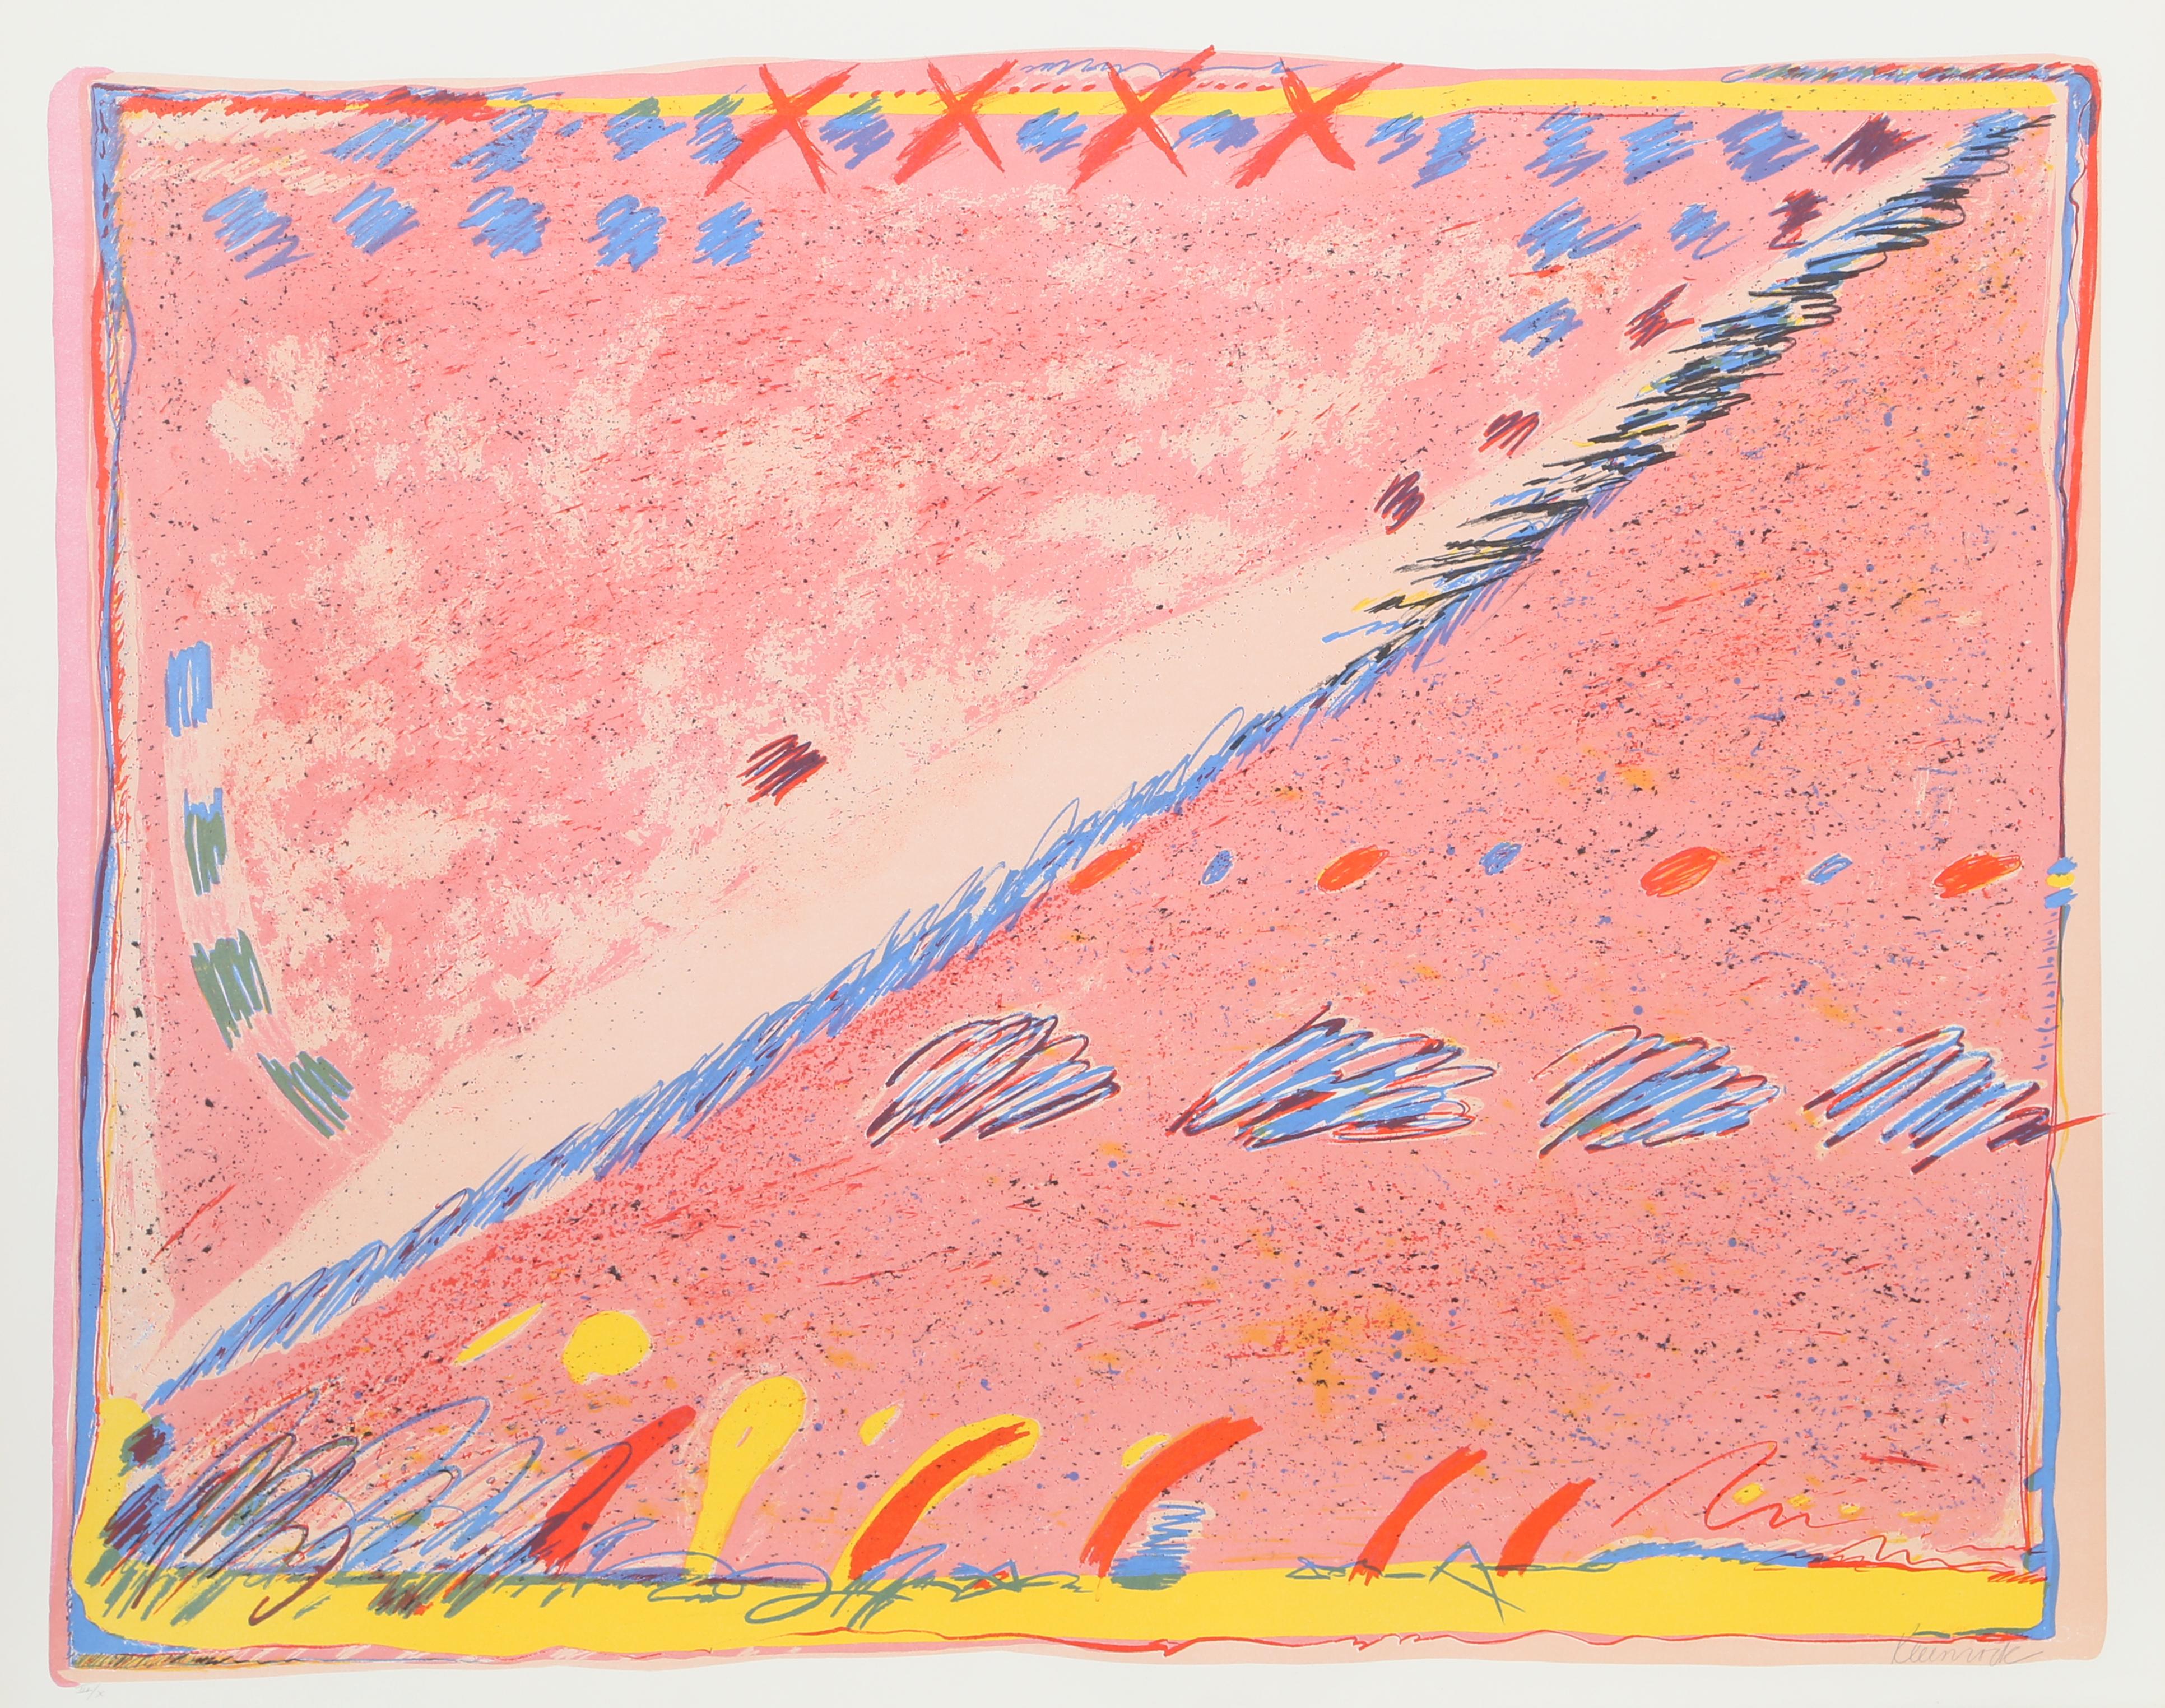 Künstlerin: Sybil Kleinrock
Titel: Unbetitelt I
Jahr: ca. 1978
Medium: Lithographie, mit Bleistift signiert und nummeriert
Auflage: 100, X
Größe: 29 x 36 Zoll (73,66 x 91,44 cm)